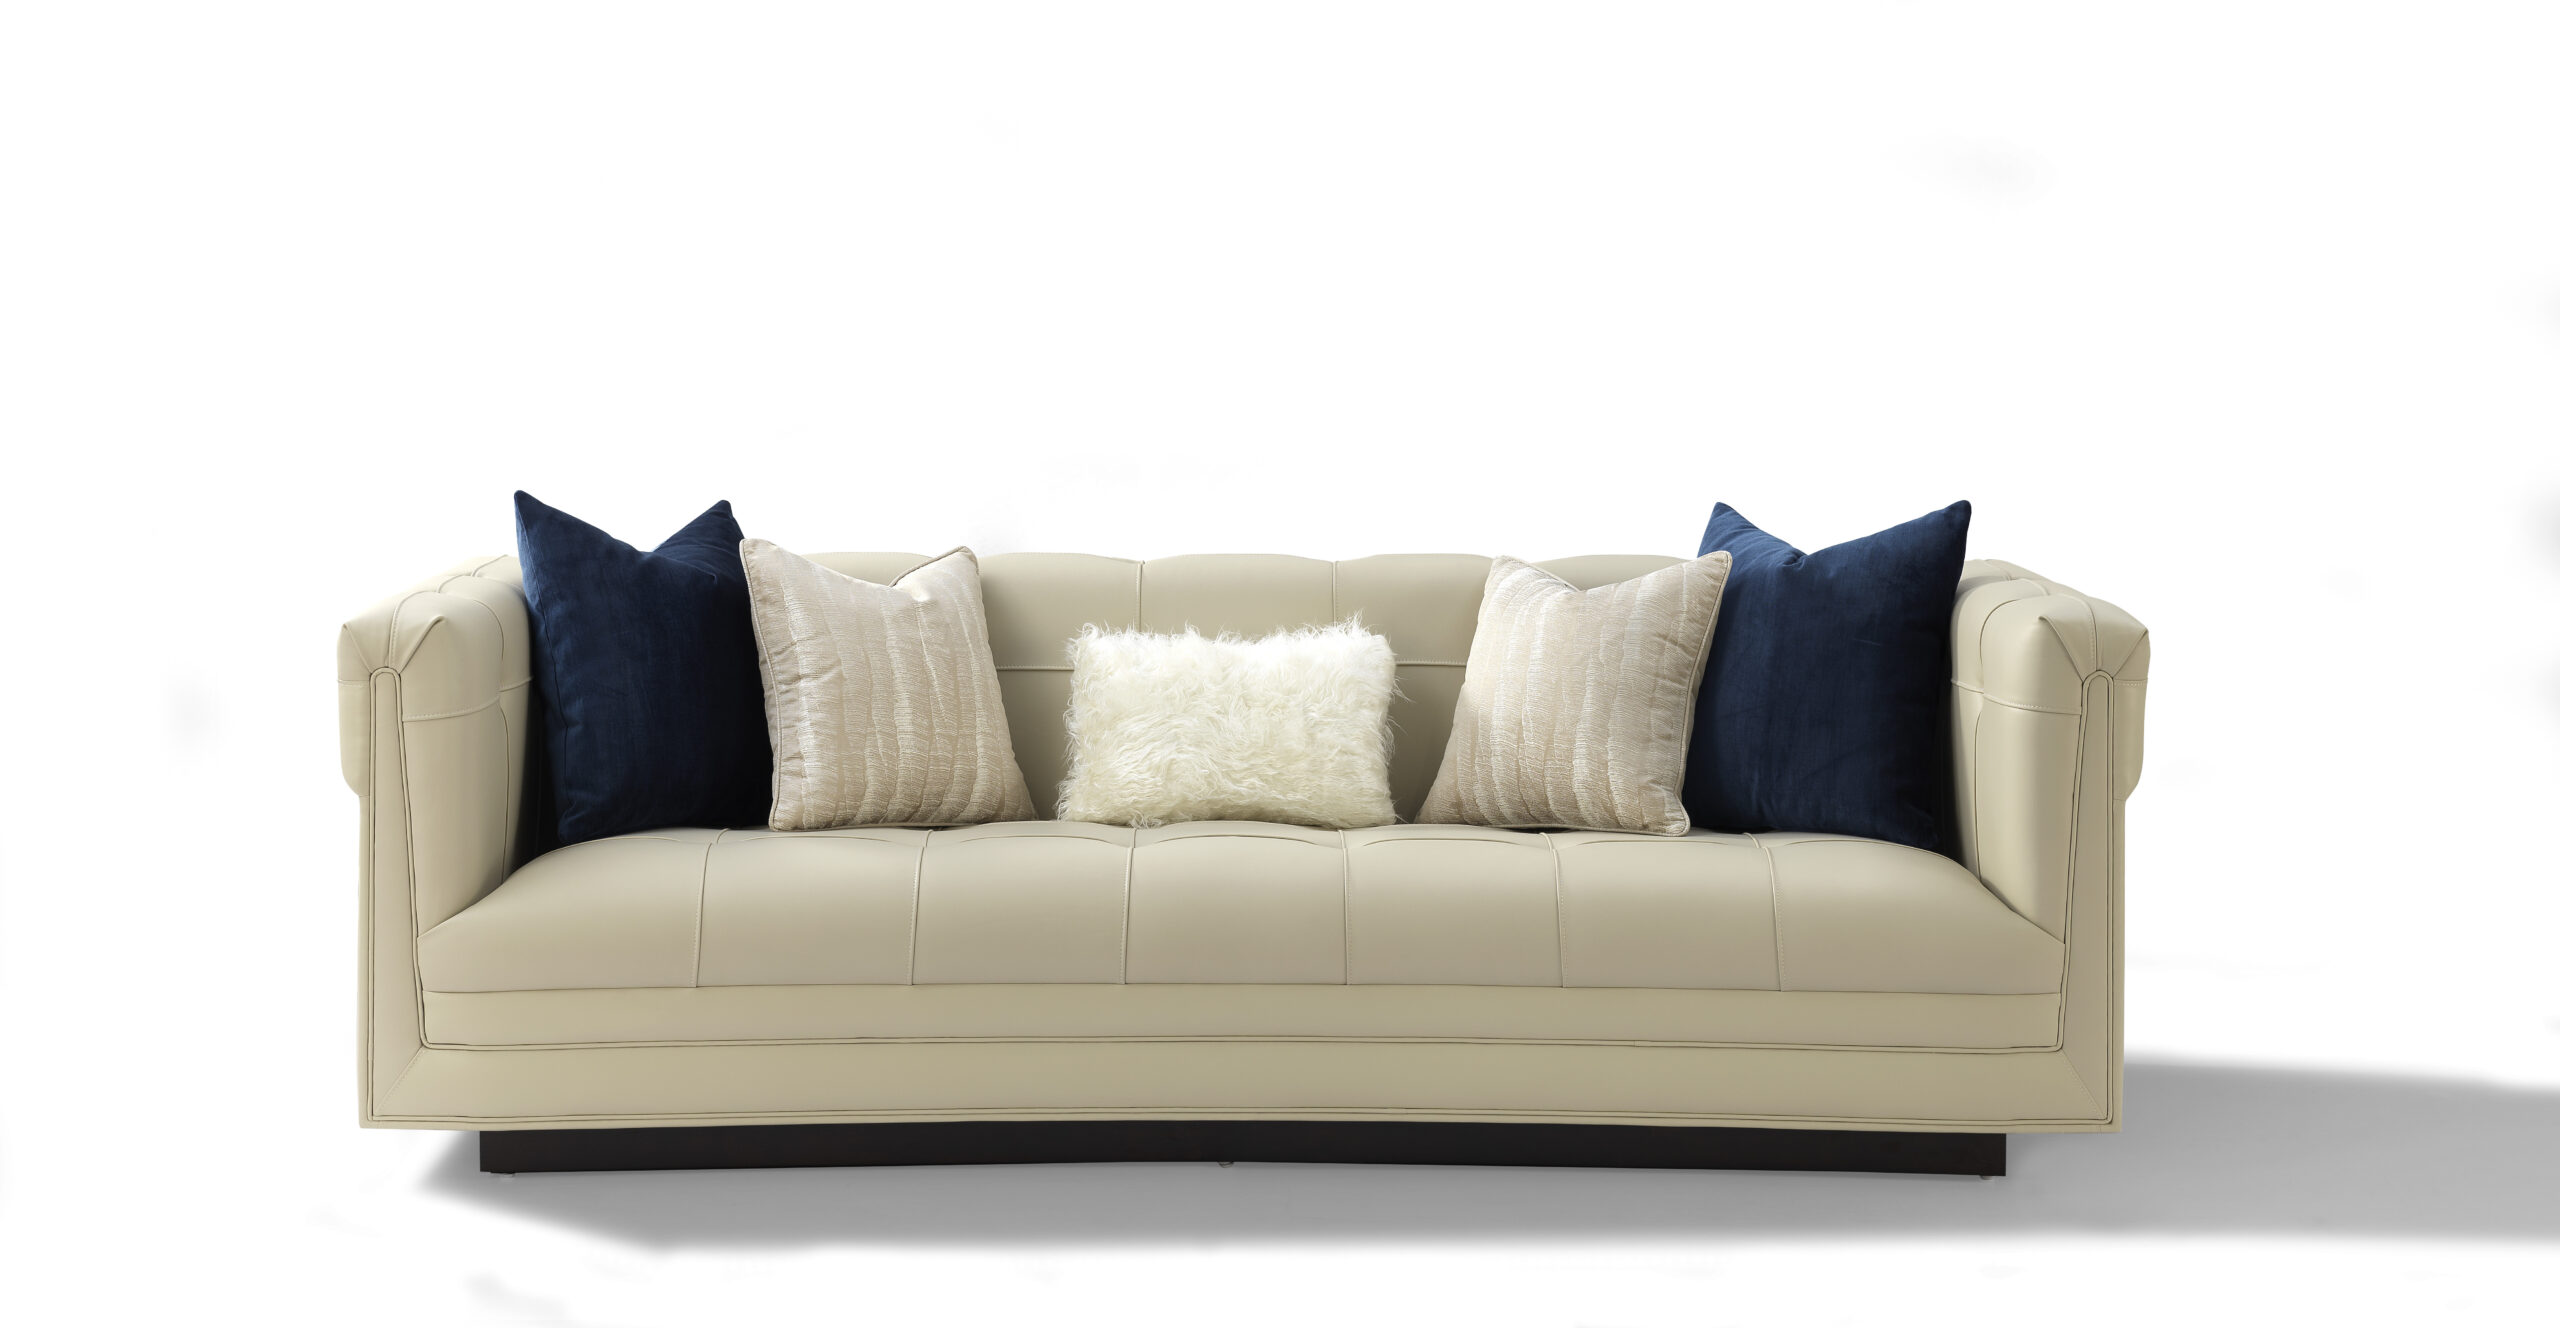 Zweisitzer Sofas Wohnzimmer Couch Sofa 2 Sitzer Möbel Einrichtung Italien Luxus